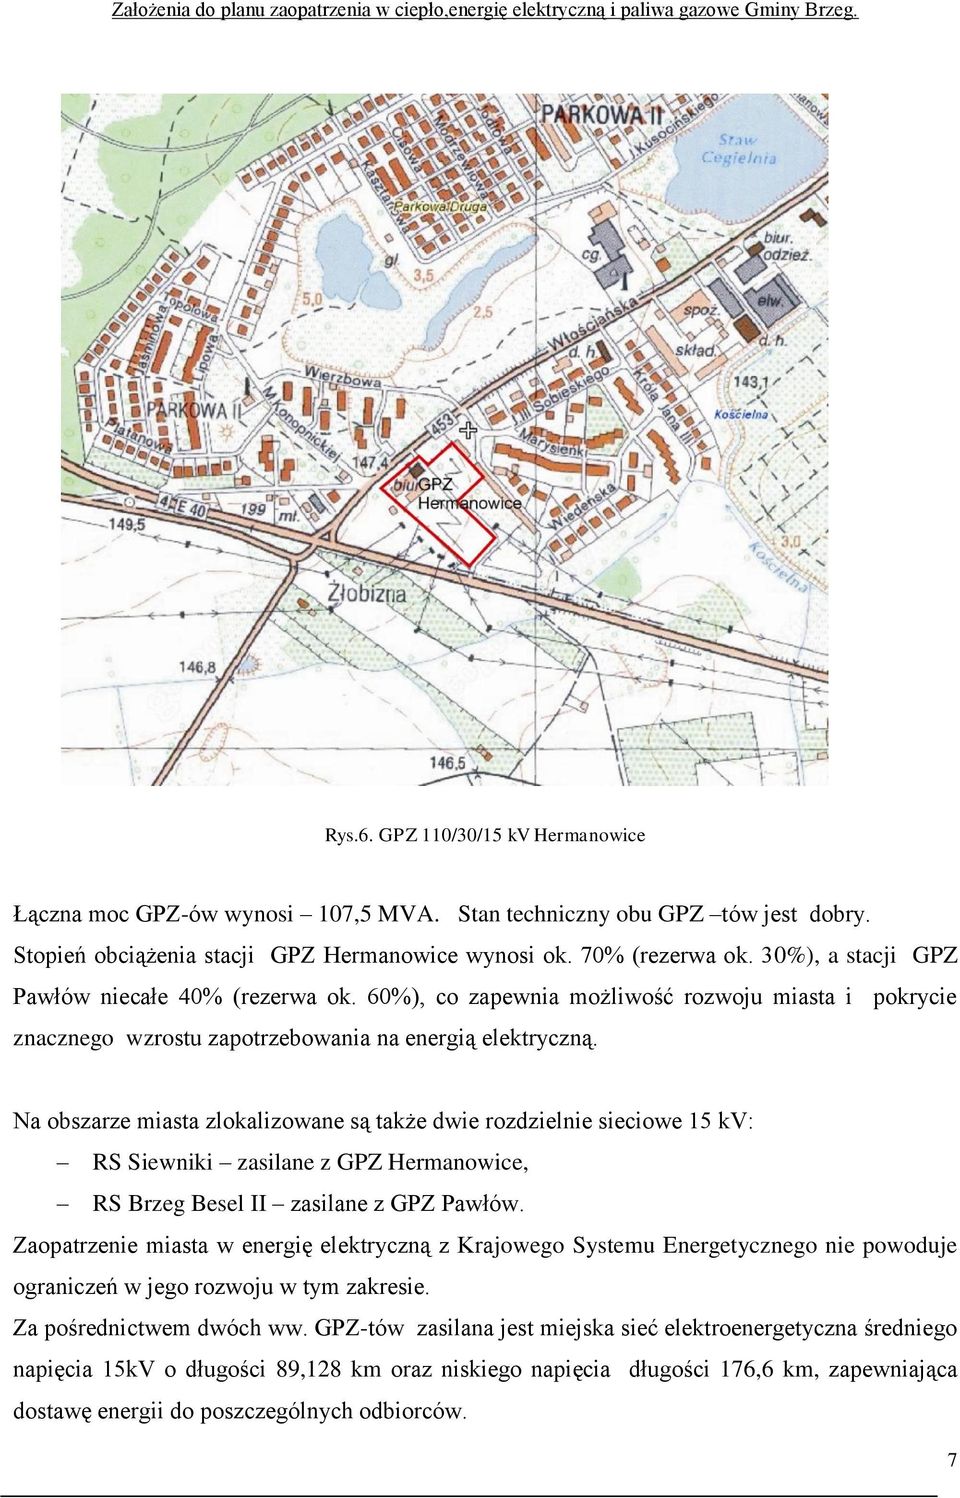 Na obszarze miasta zlokalizowane są także dwie rozdzielnie sieciowe 15 kv: RS Siewniki zasilane z GPZ Hermanowice, RS Brzeg Besel II zasilane z GPZ Pawłów.